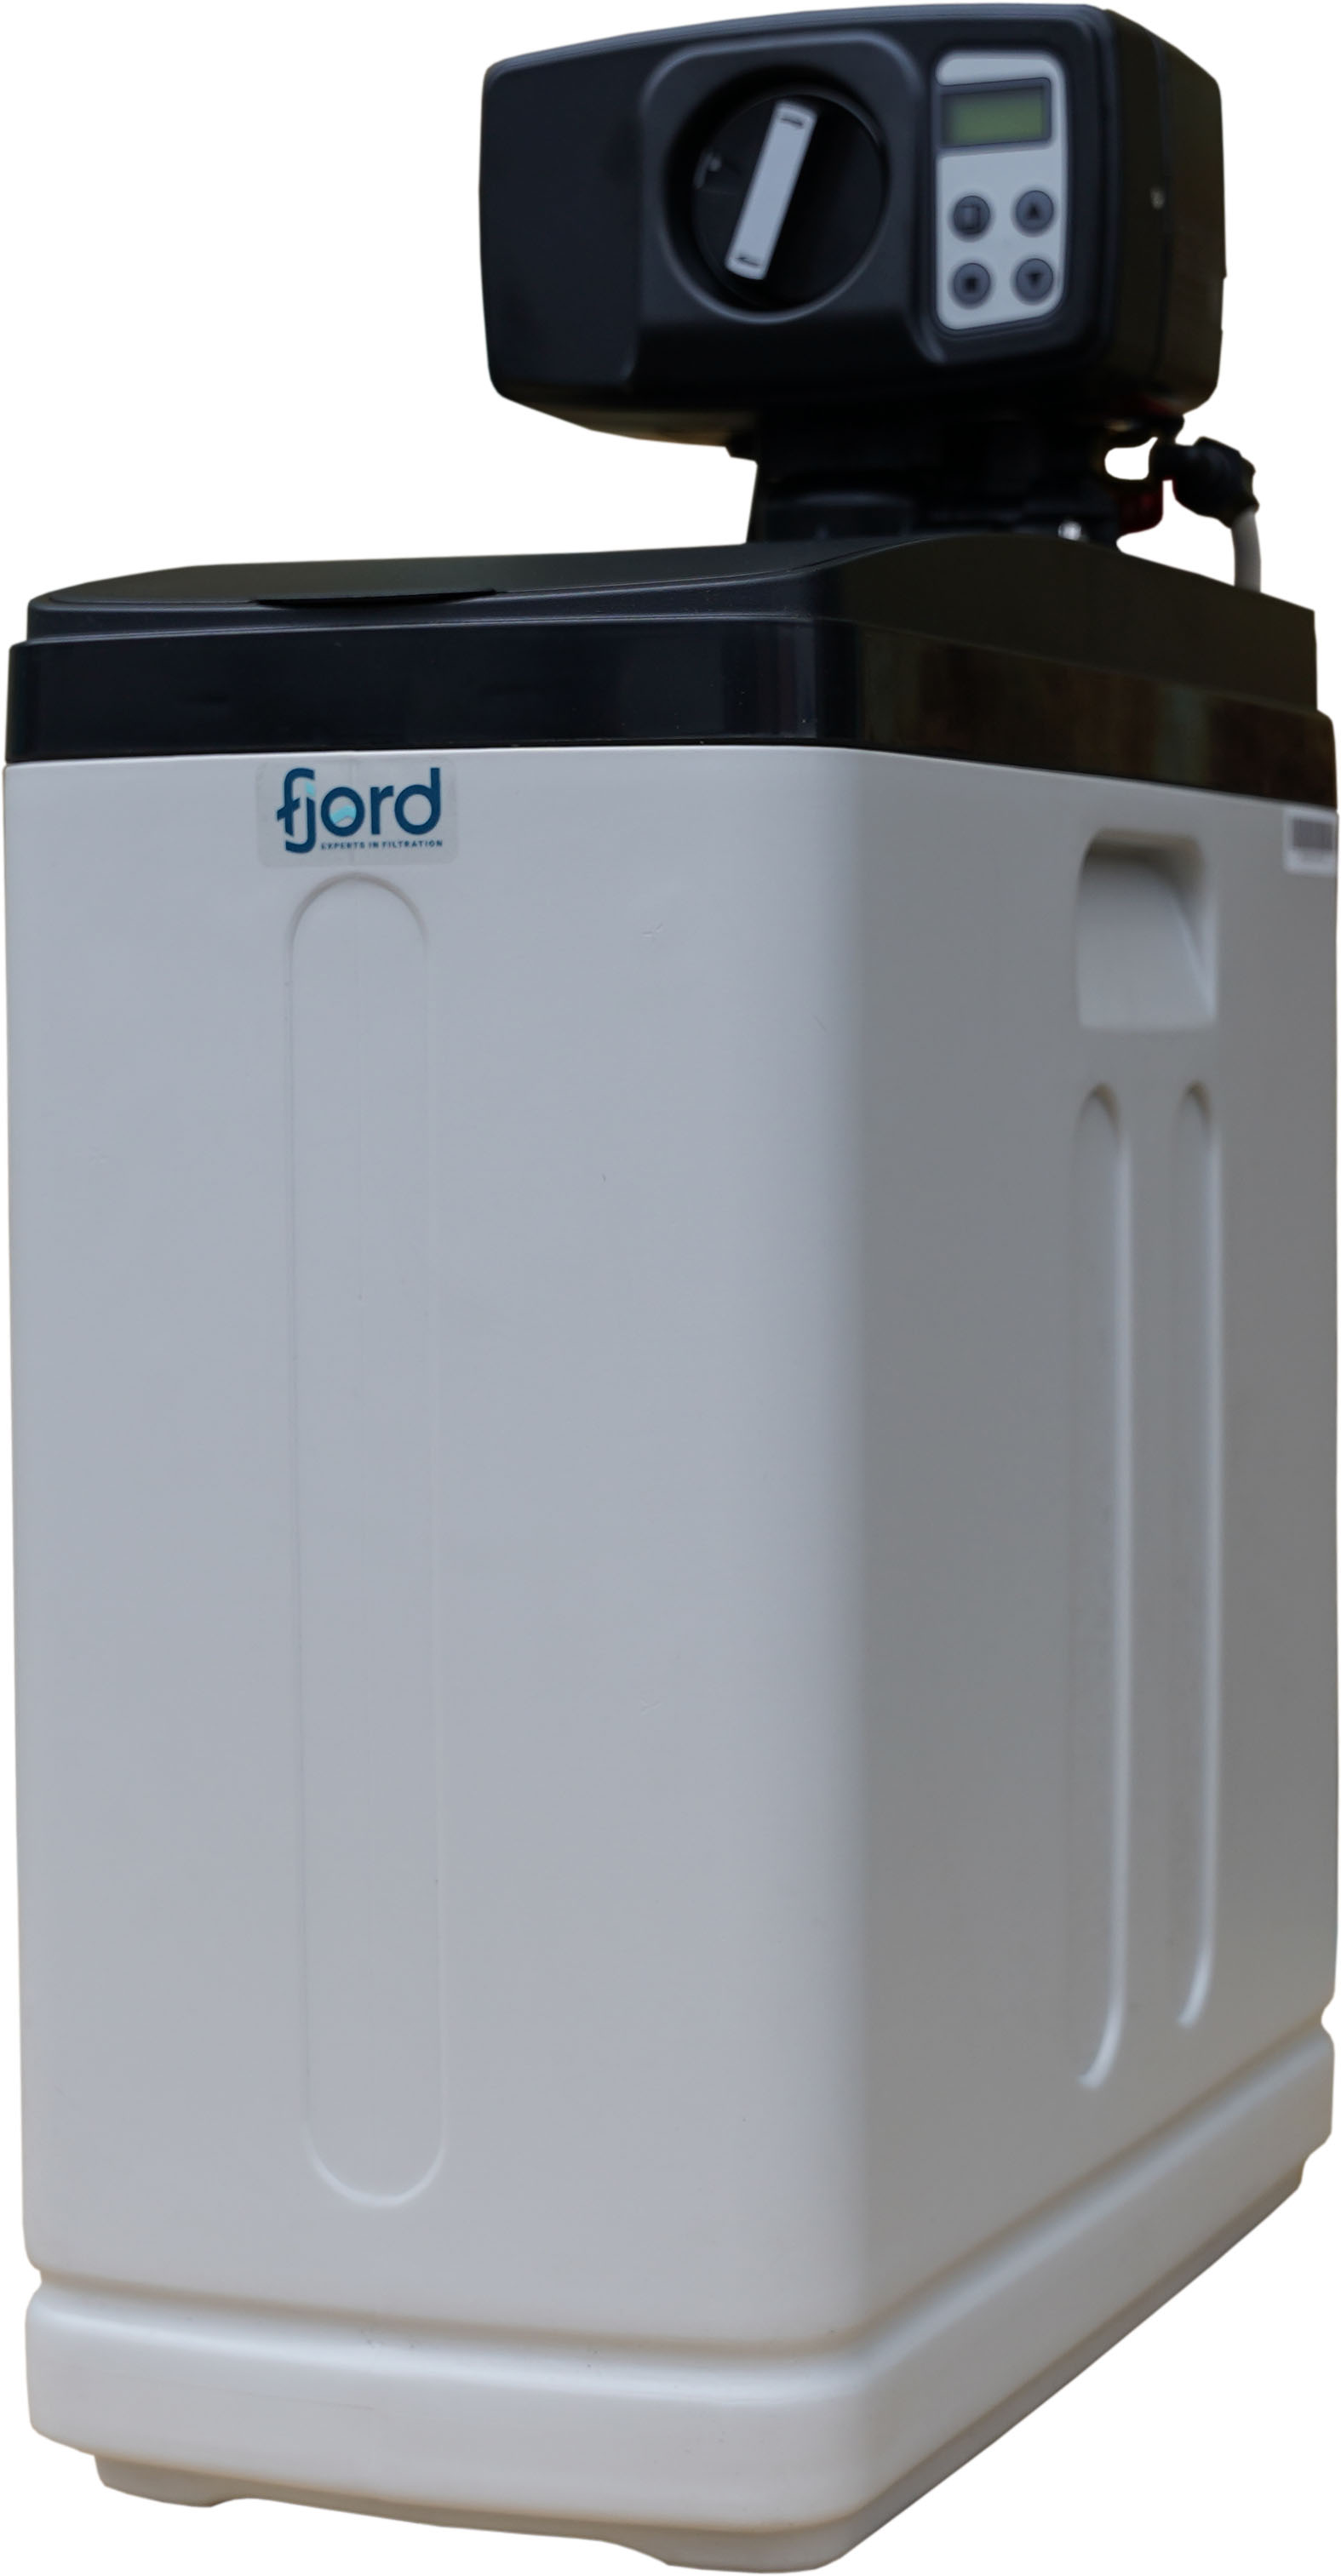 Фильтр для очистки воды от марганца Fjord Master FM-817 кабинет (комплексная очистка)